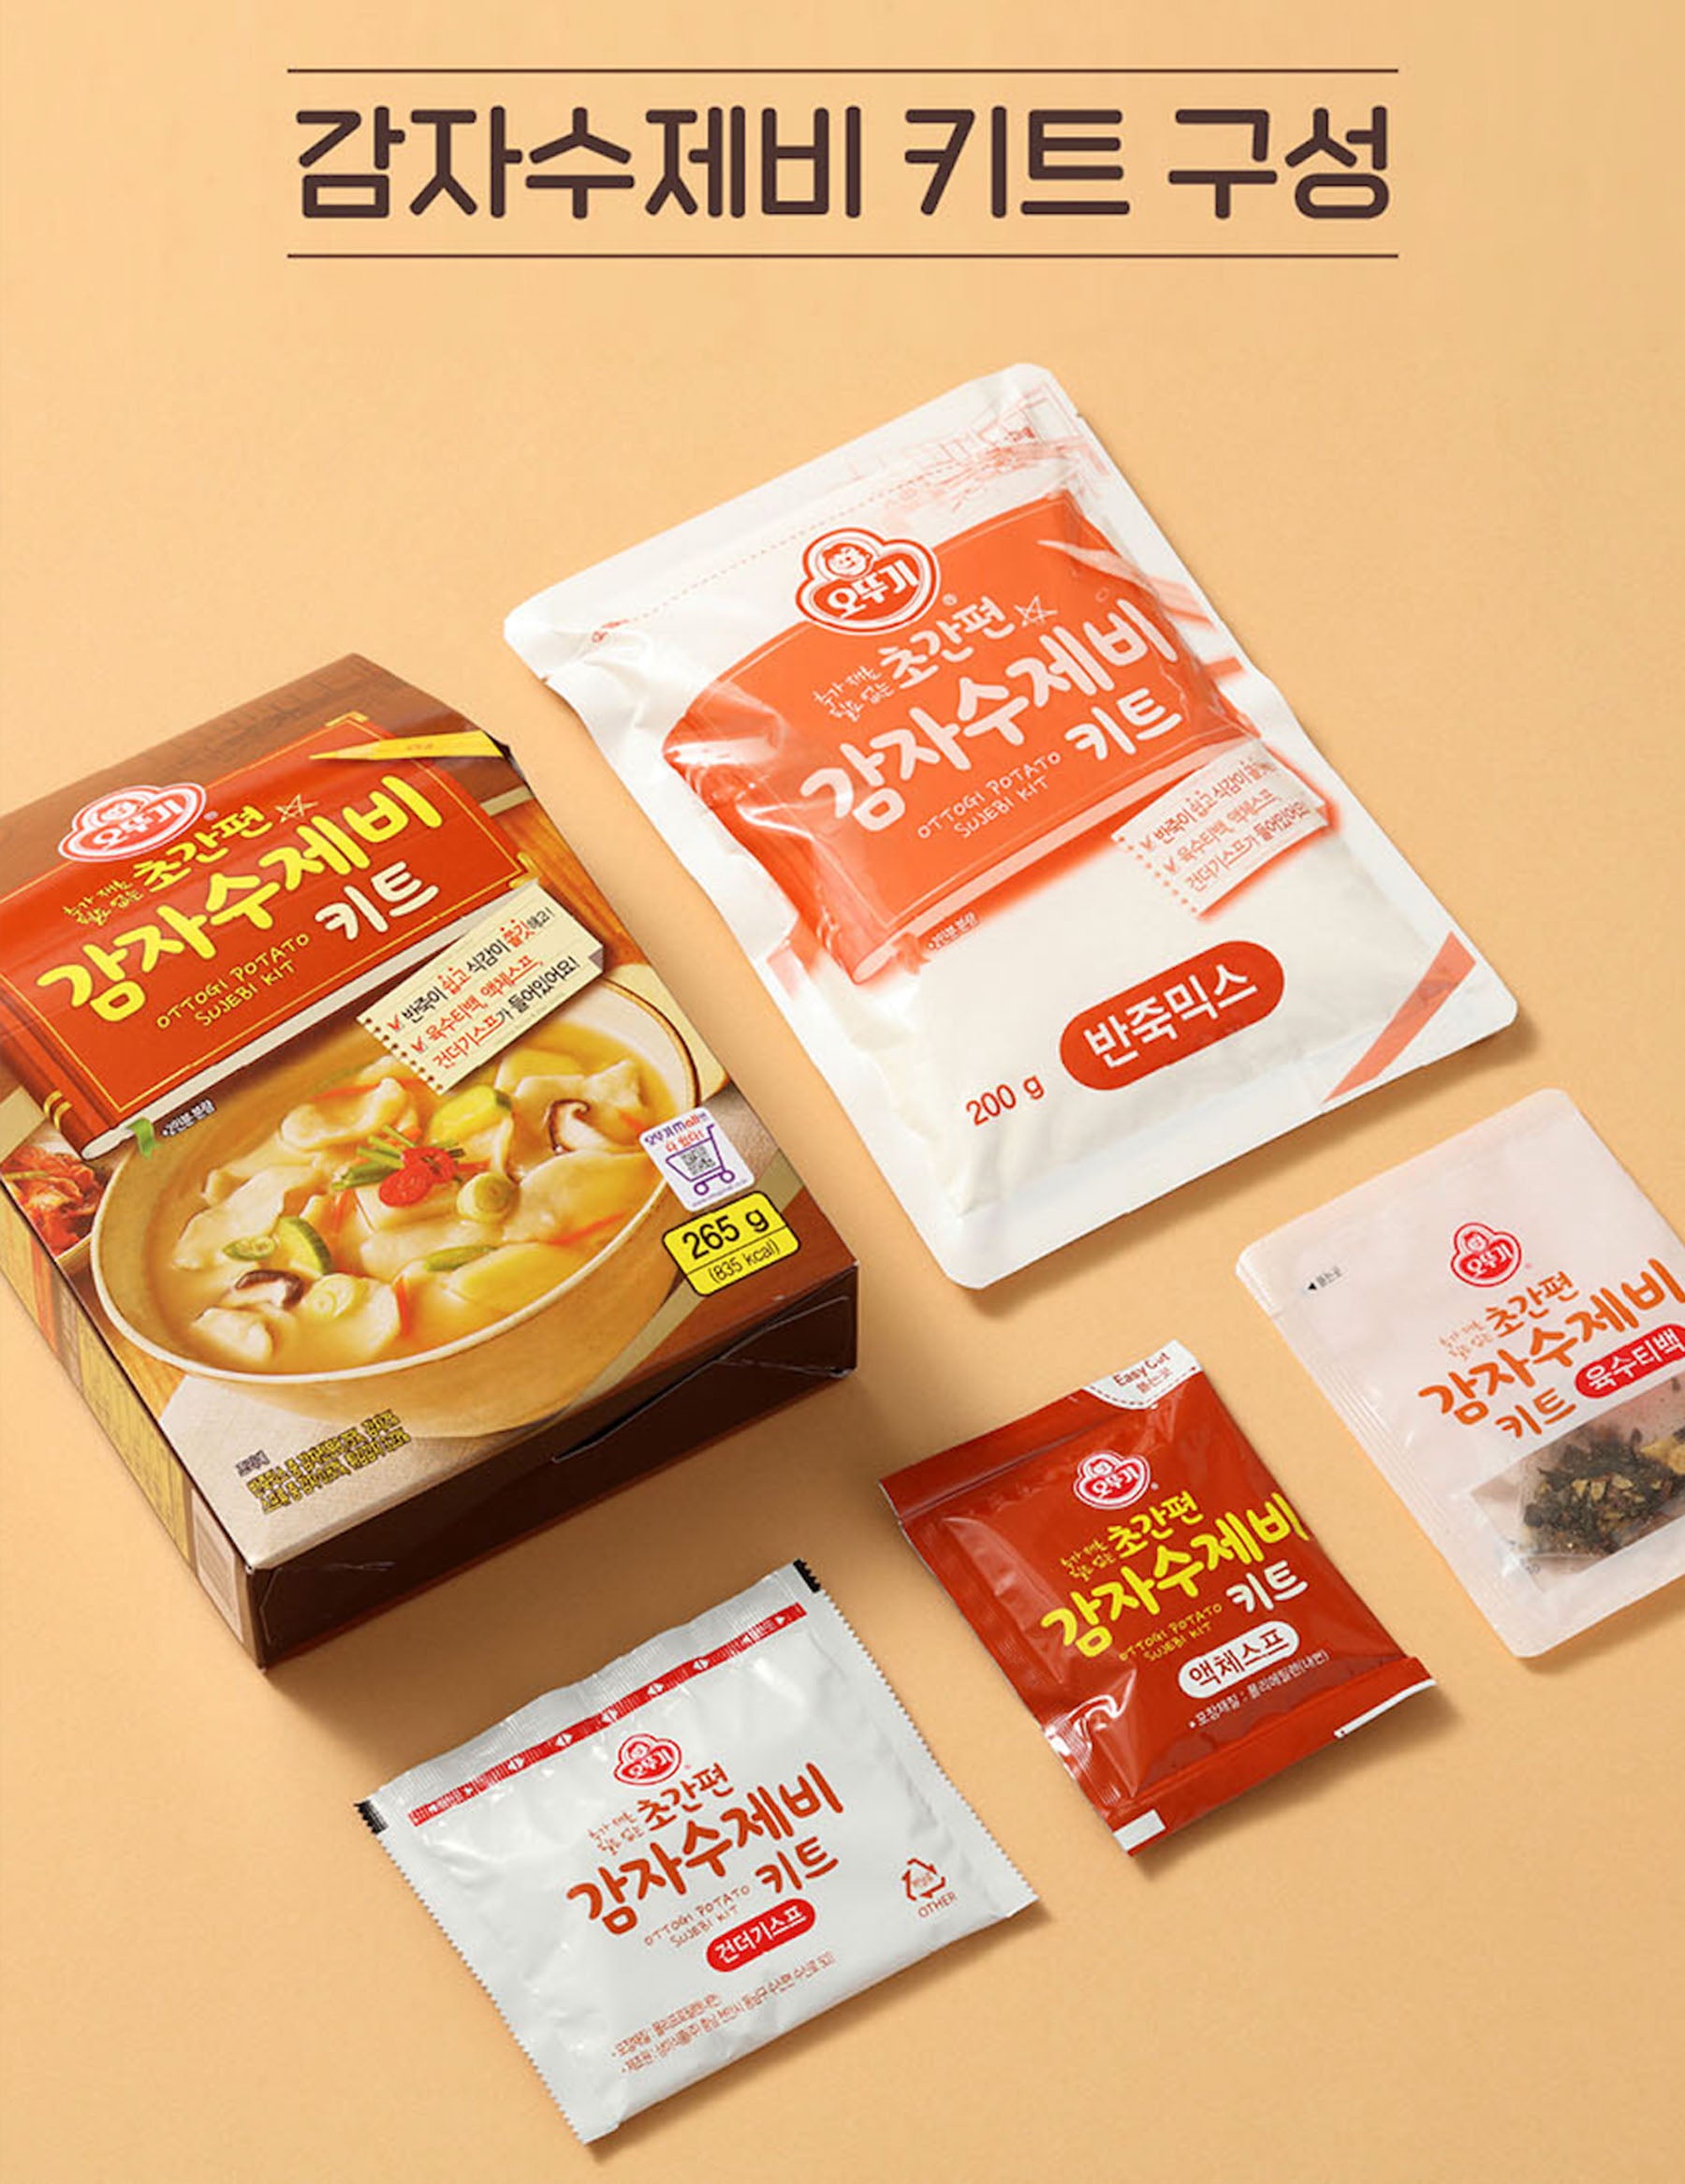 *Potato Sujebi(Hand-Torn Noodle Soup: 수제비) Kit 265g(9.35oz)